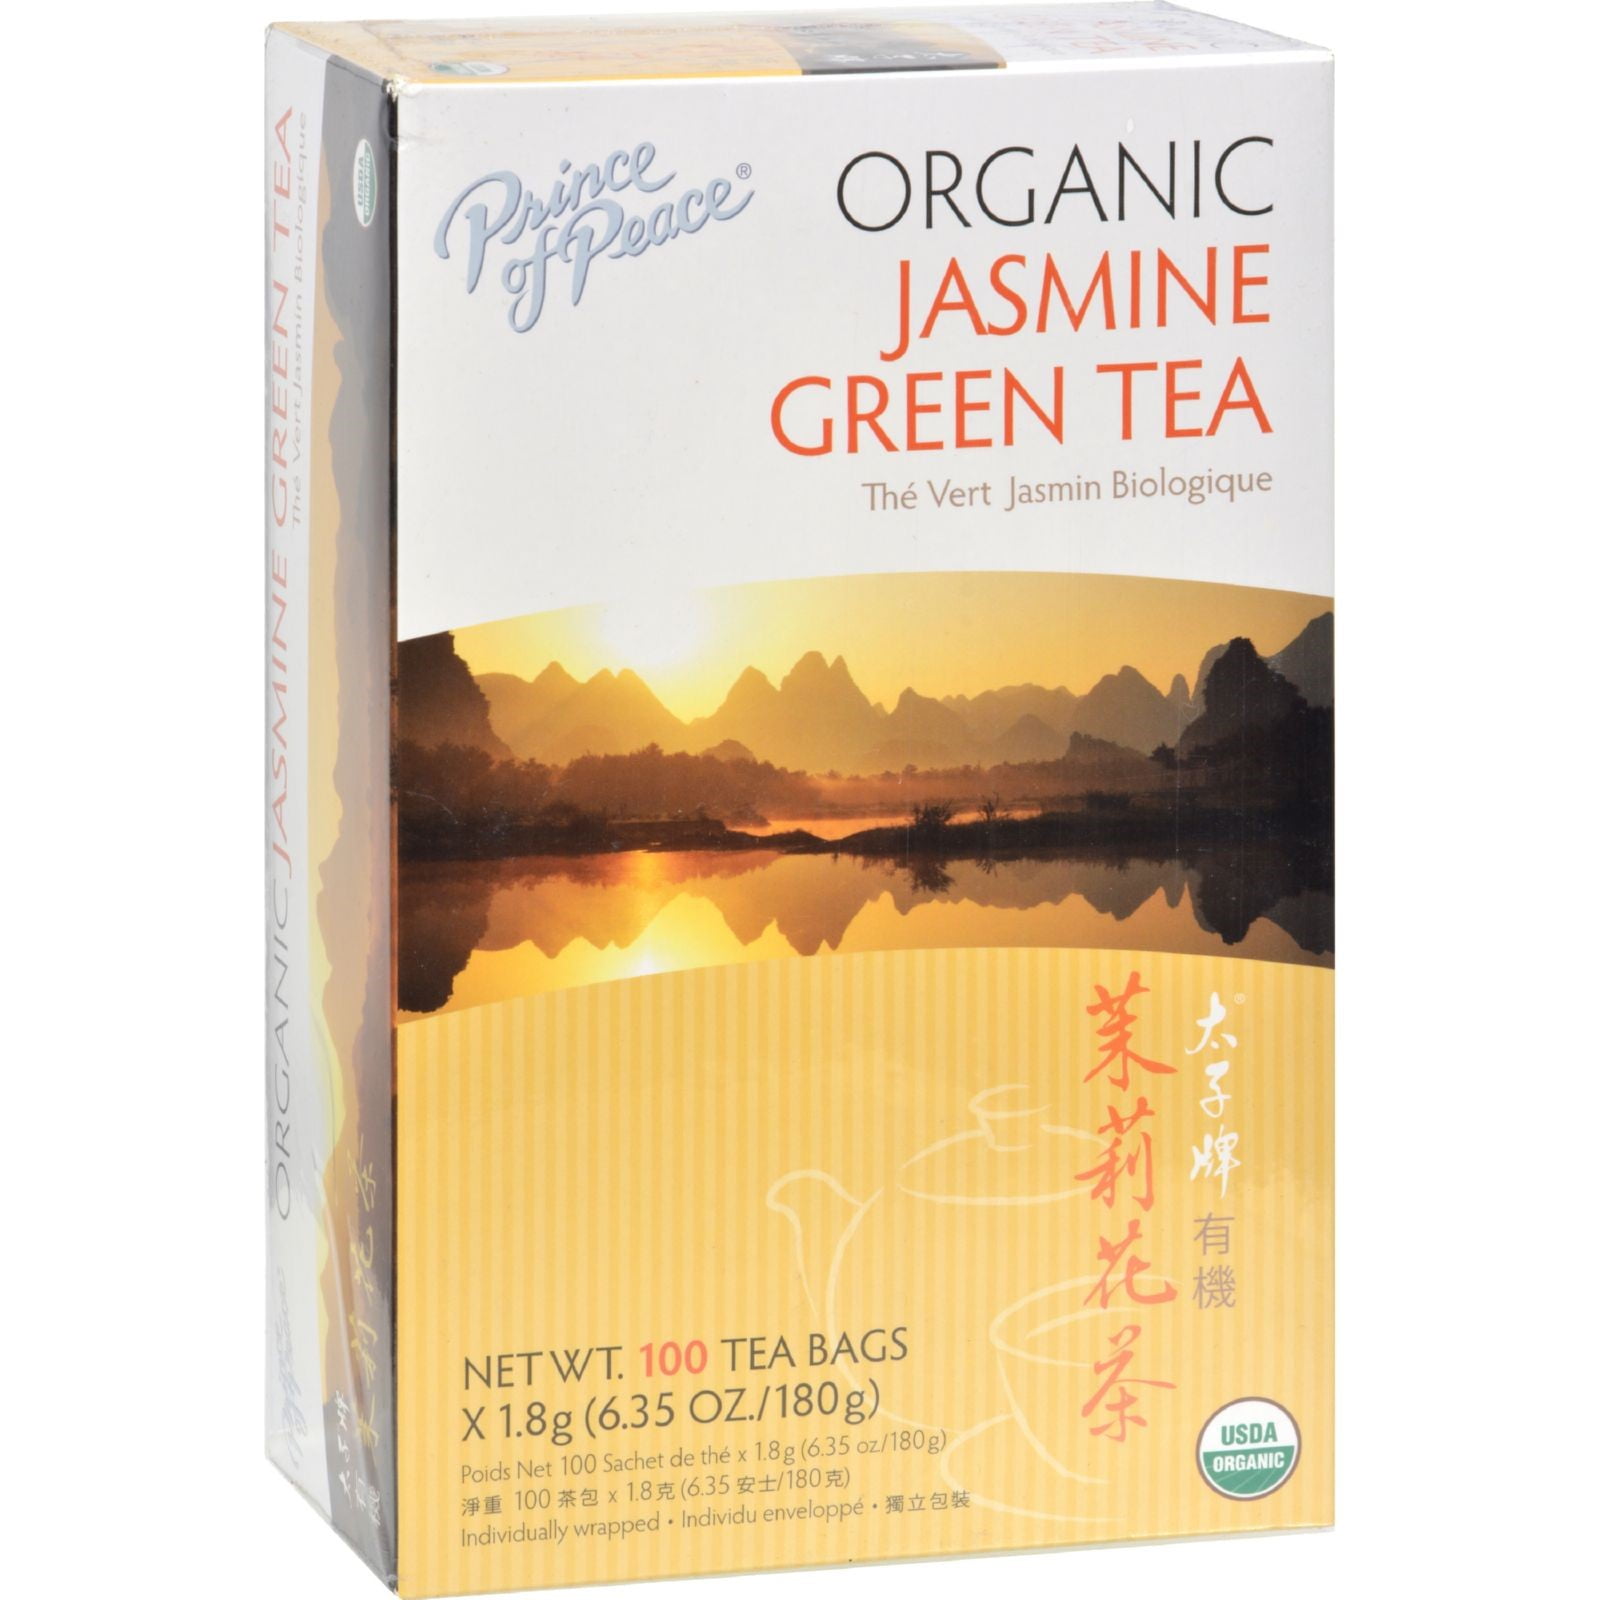 Stassen Pure Jasmine Green Tea, 100 Tea Bags - Walmart.com